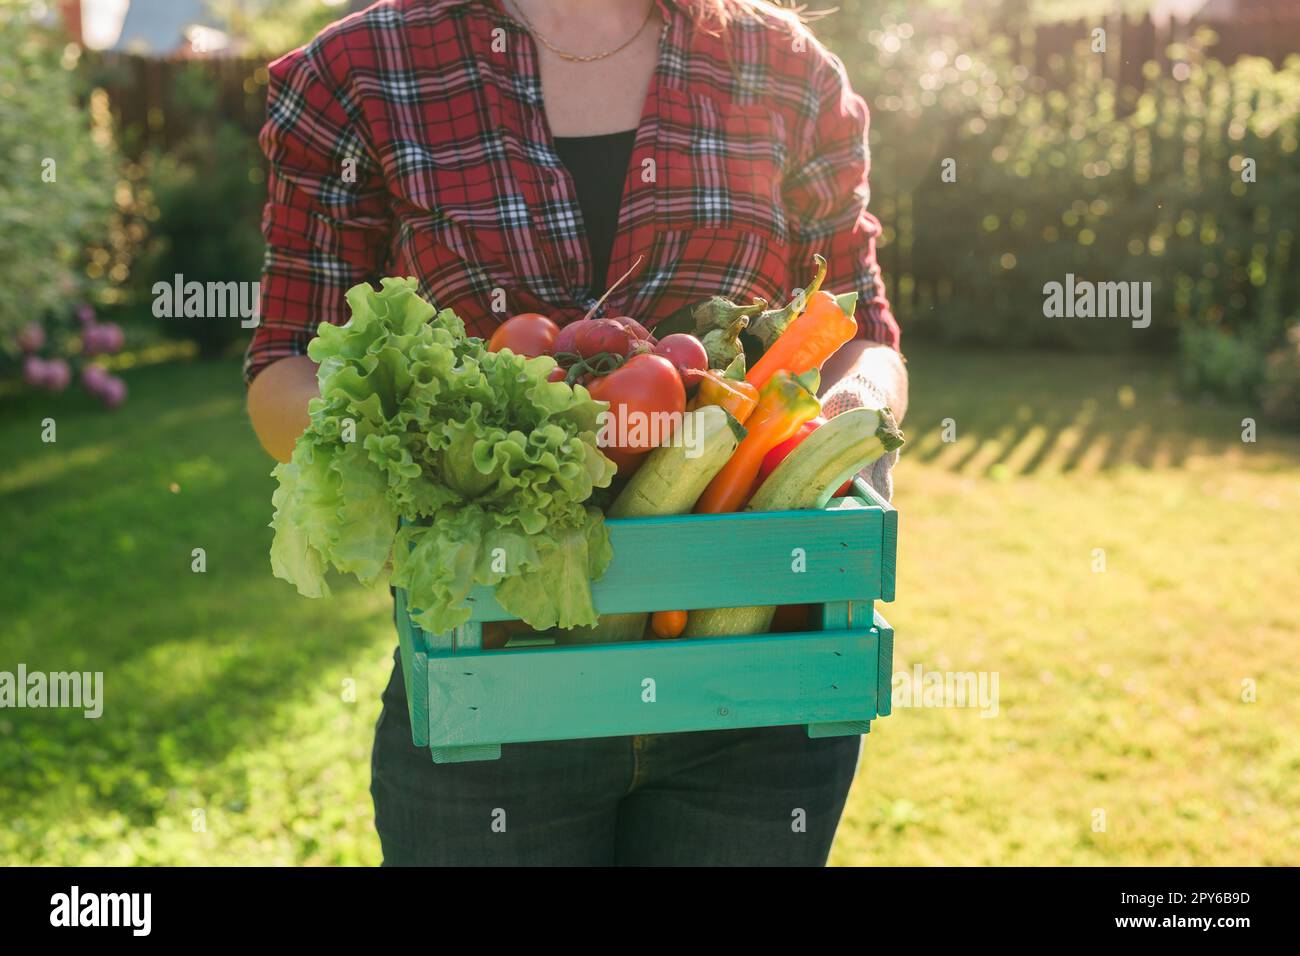 Venta de productos agricolas fotografías e imágenes de alta resolución -  Alamy